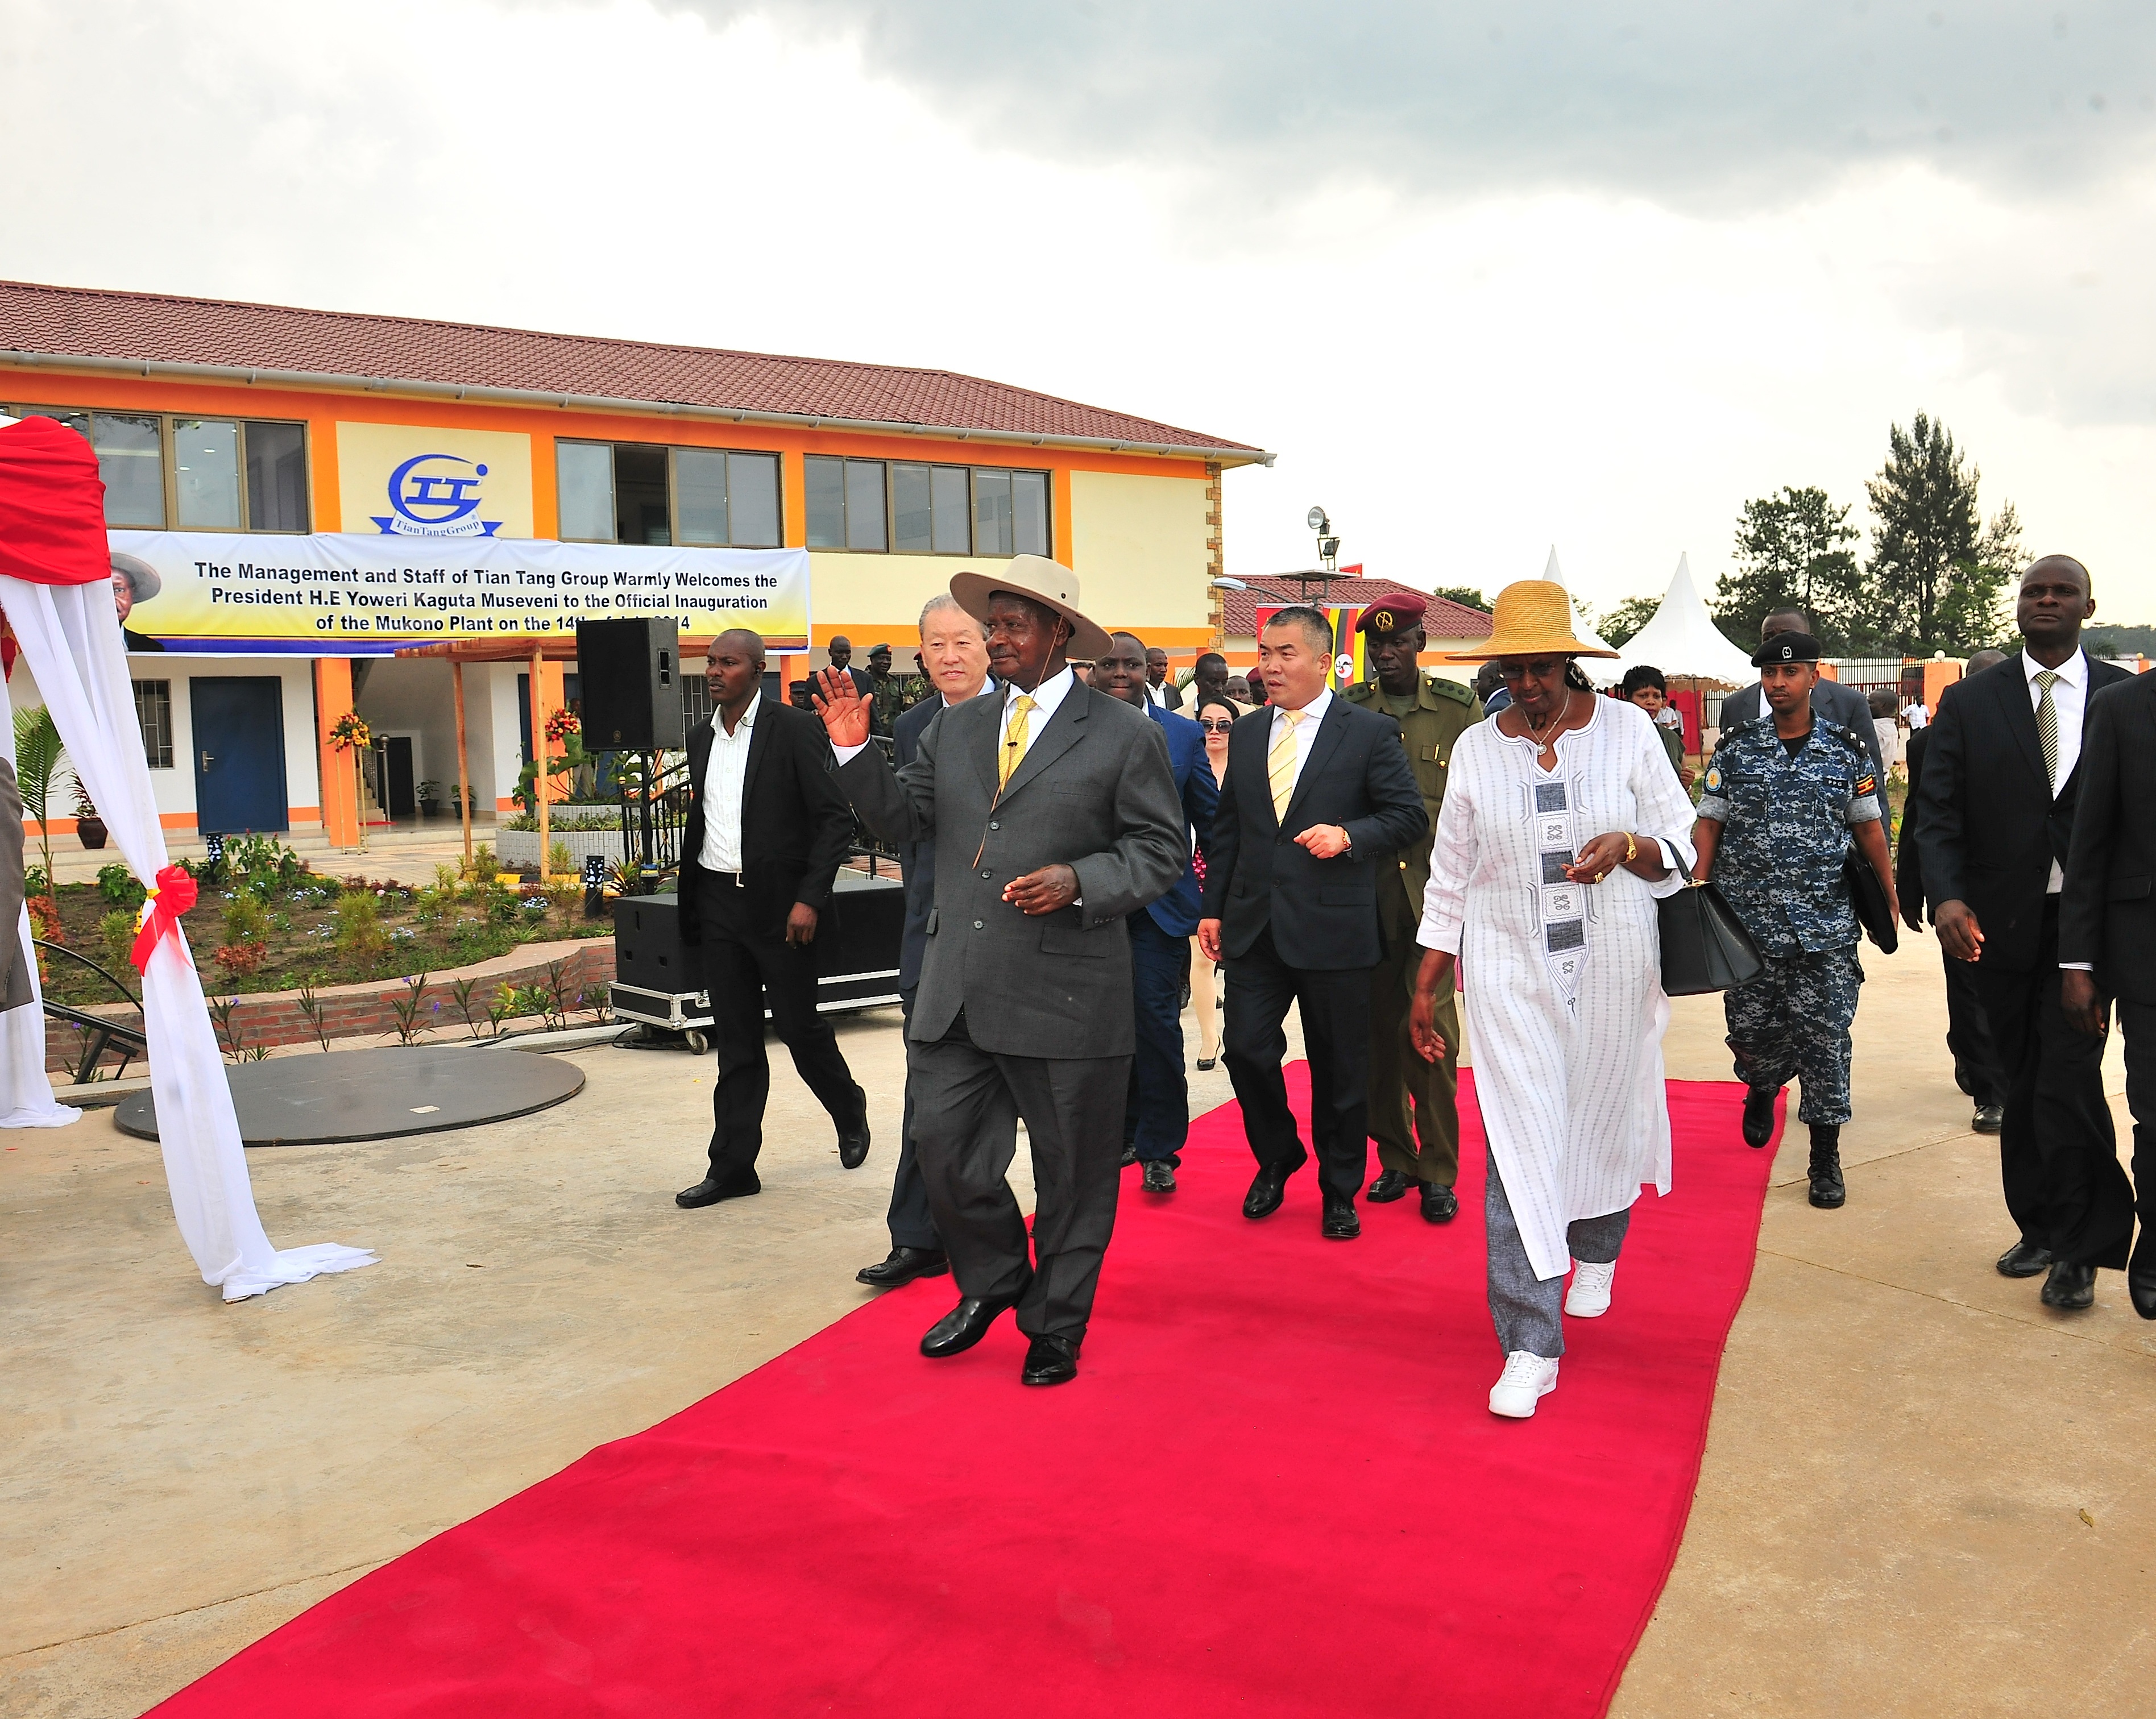 2014年7月14日，乌干达总统和第一夫人率领工贸部部长、青年部部长、外交部国务部长、投资部国务部长等30余人参观考察天唐集团MUKONO工业区